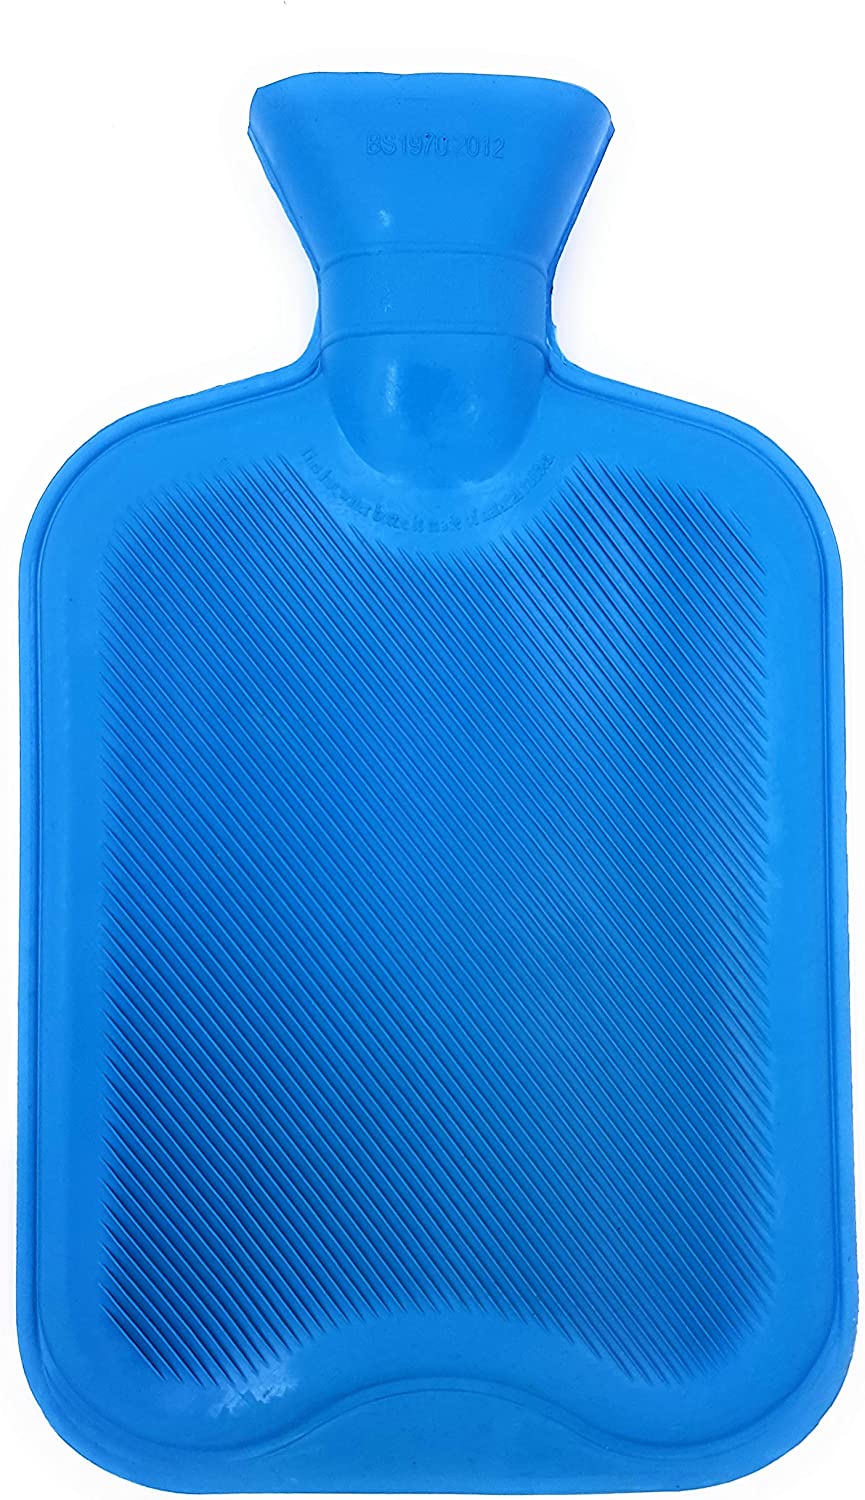 Deidentified Hot Water Bottle 2 Litre RRP £5.37 CLEARANCE XL £3.99